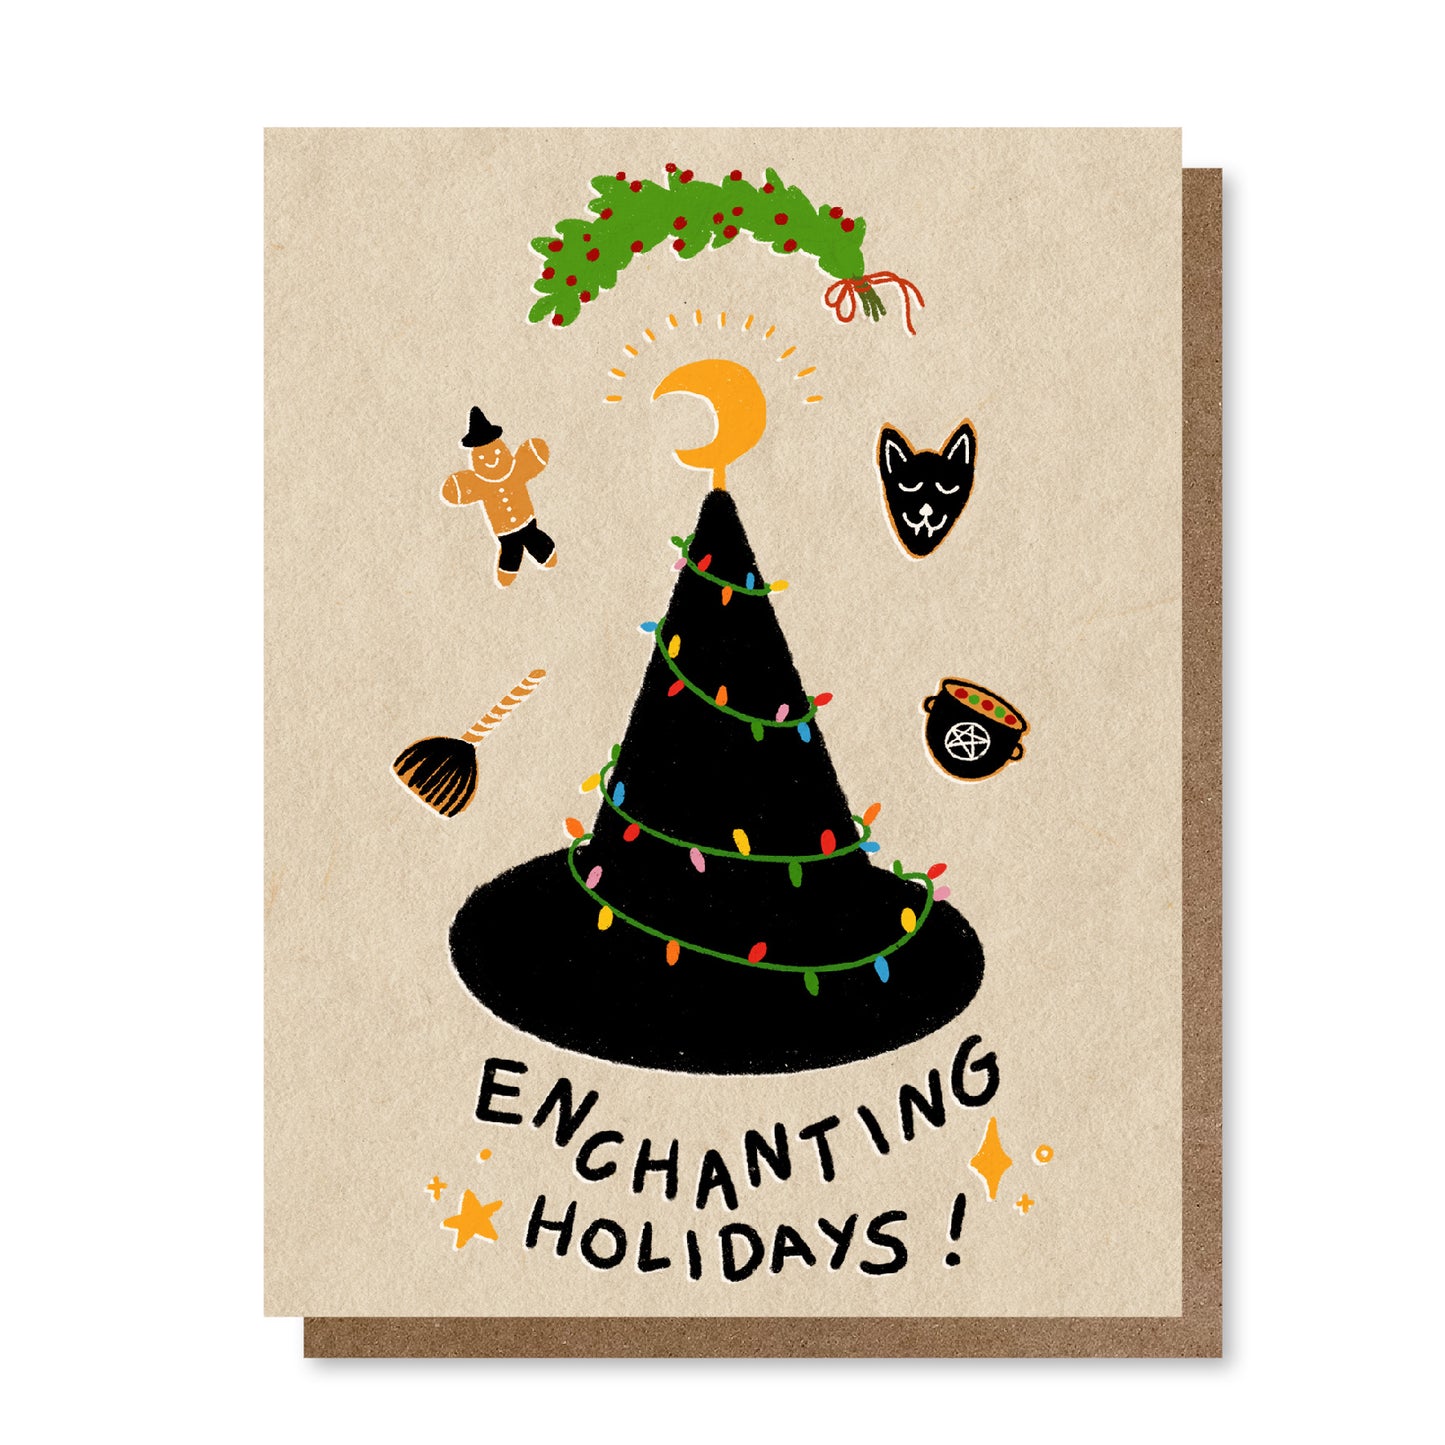 Enchanting Holidays | Greeting Card